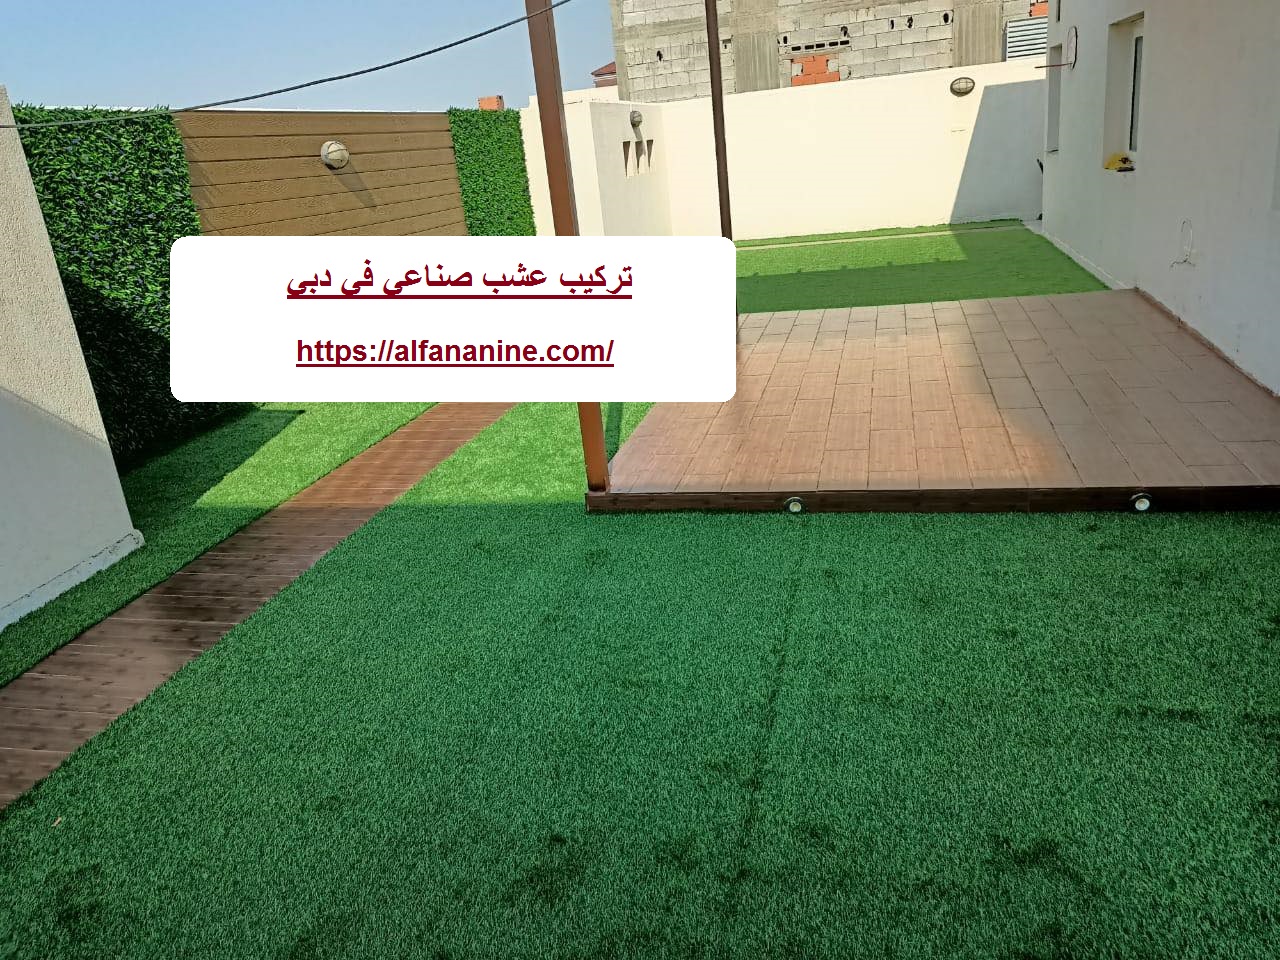 تركيب عشب صناعي في دبي